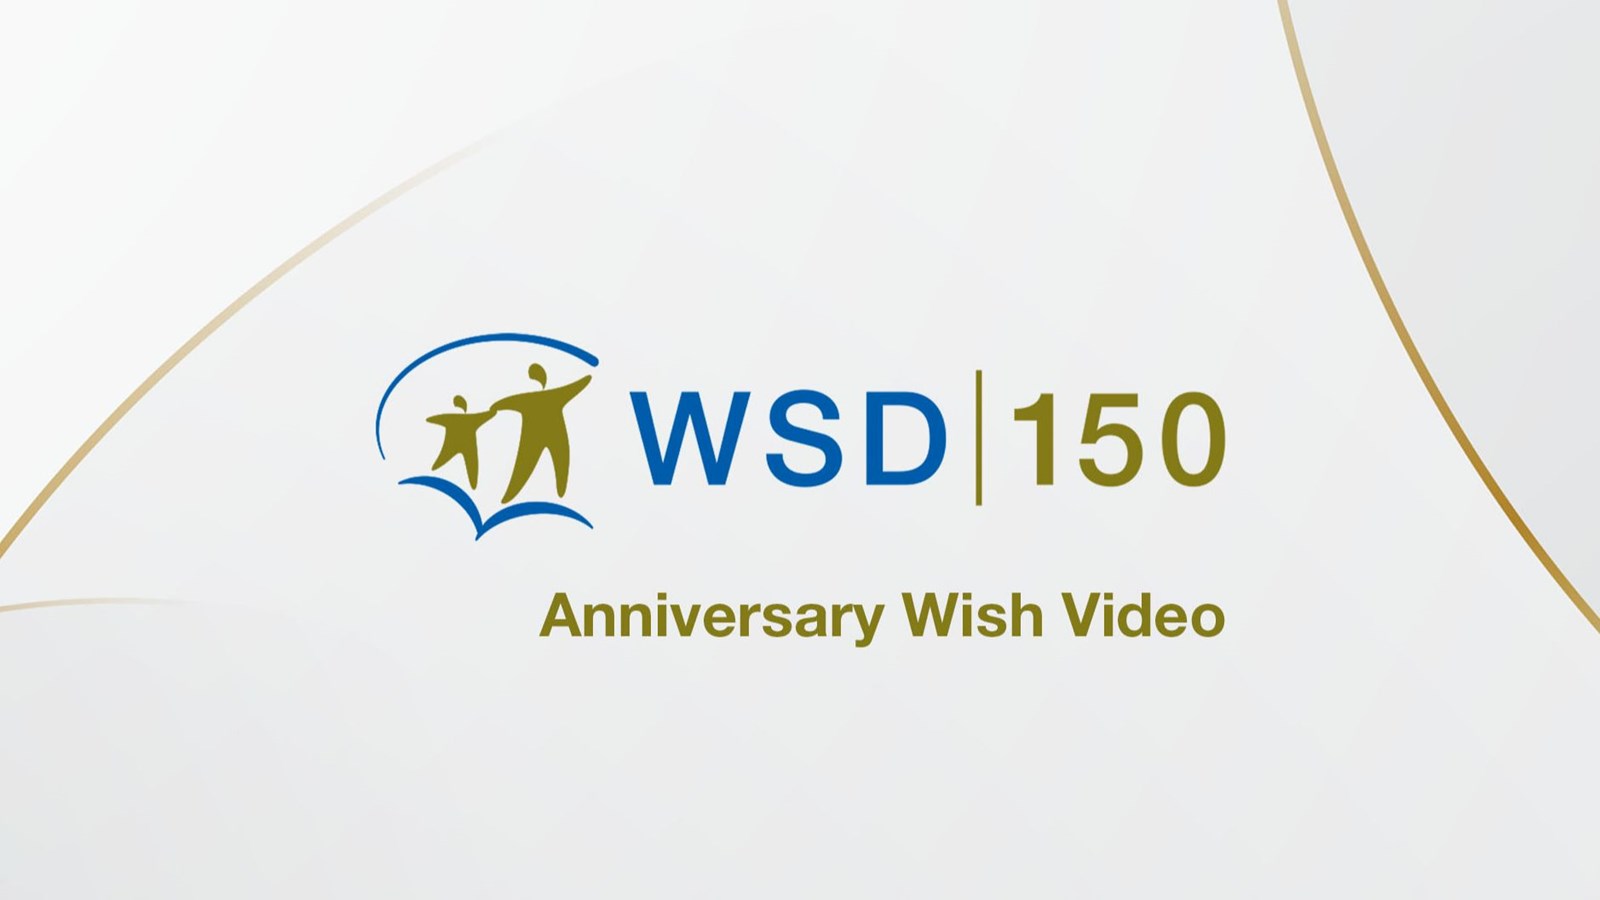 WSD 150 Anniversary Wish Video